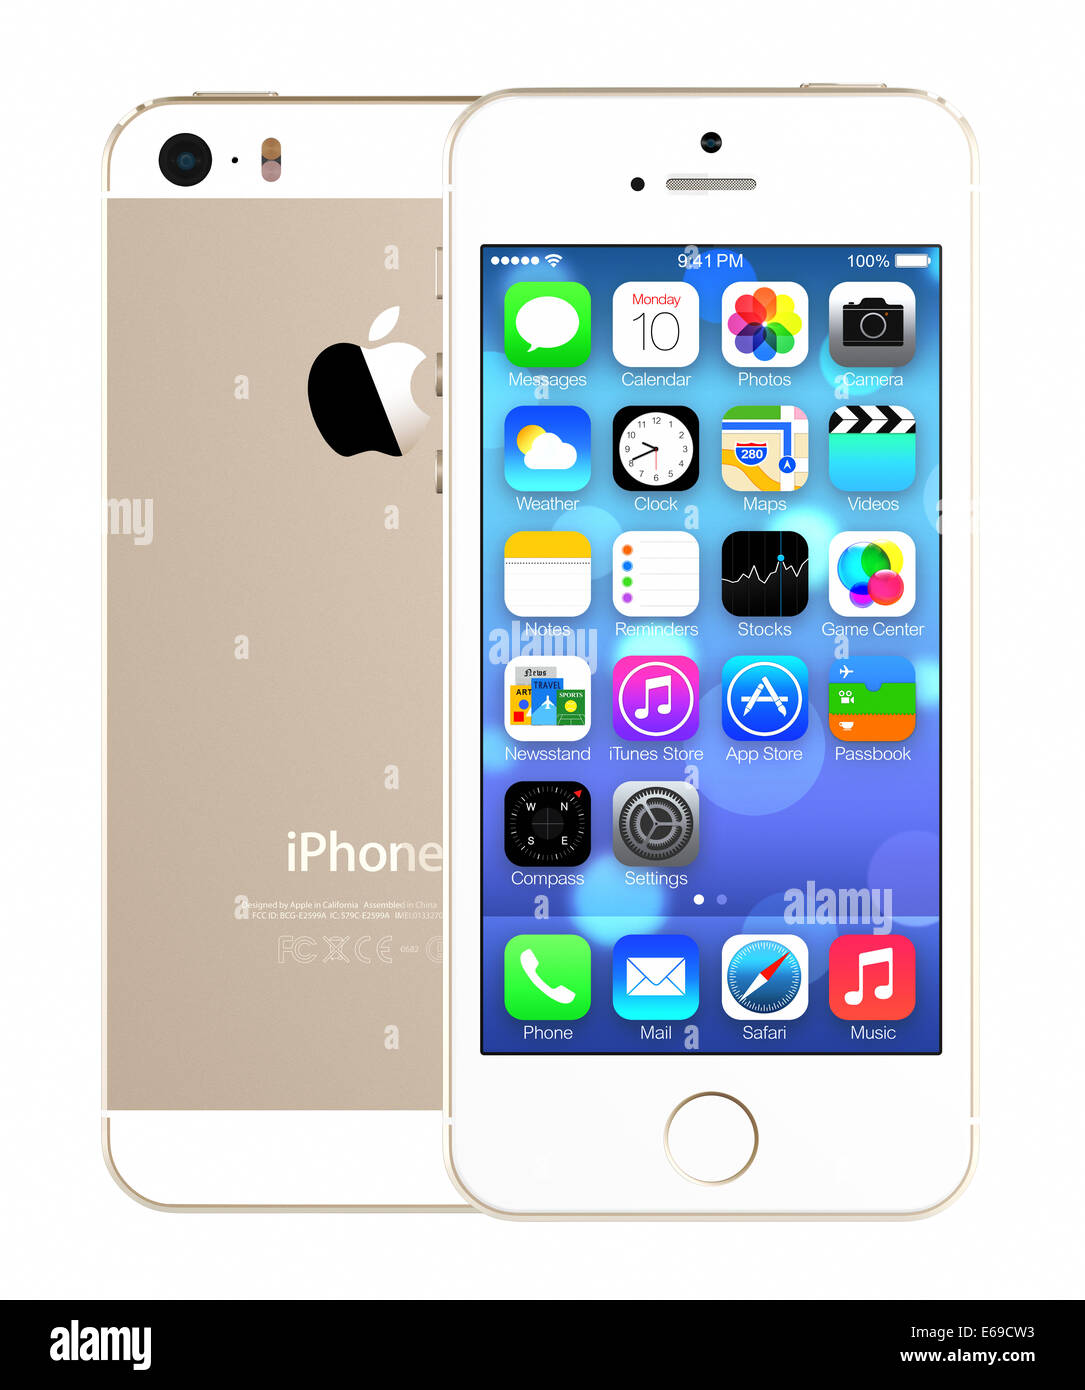 IPhone 5s mostrando la pantalla de inicio con el iOS7. Foto de stock